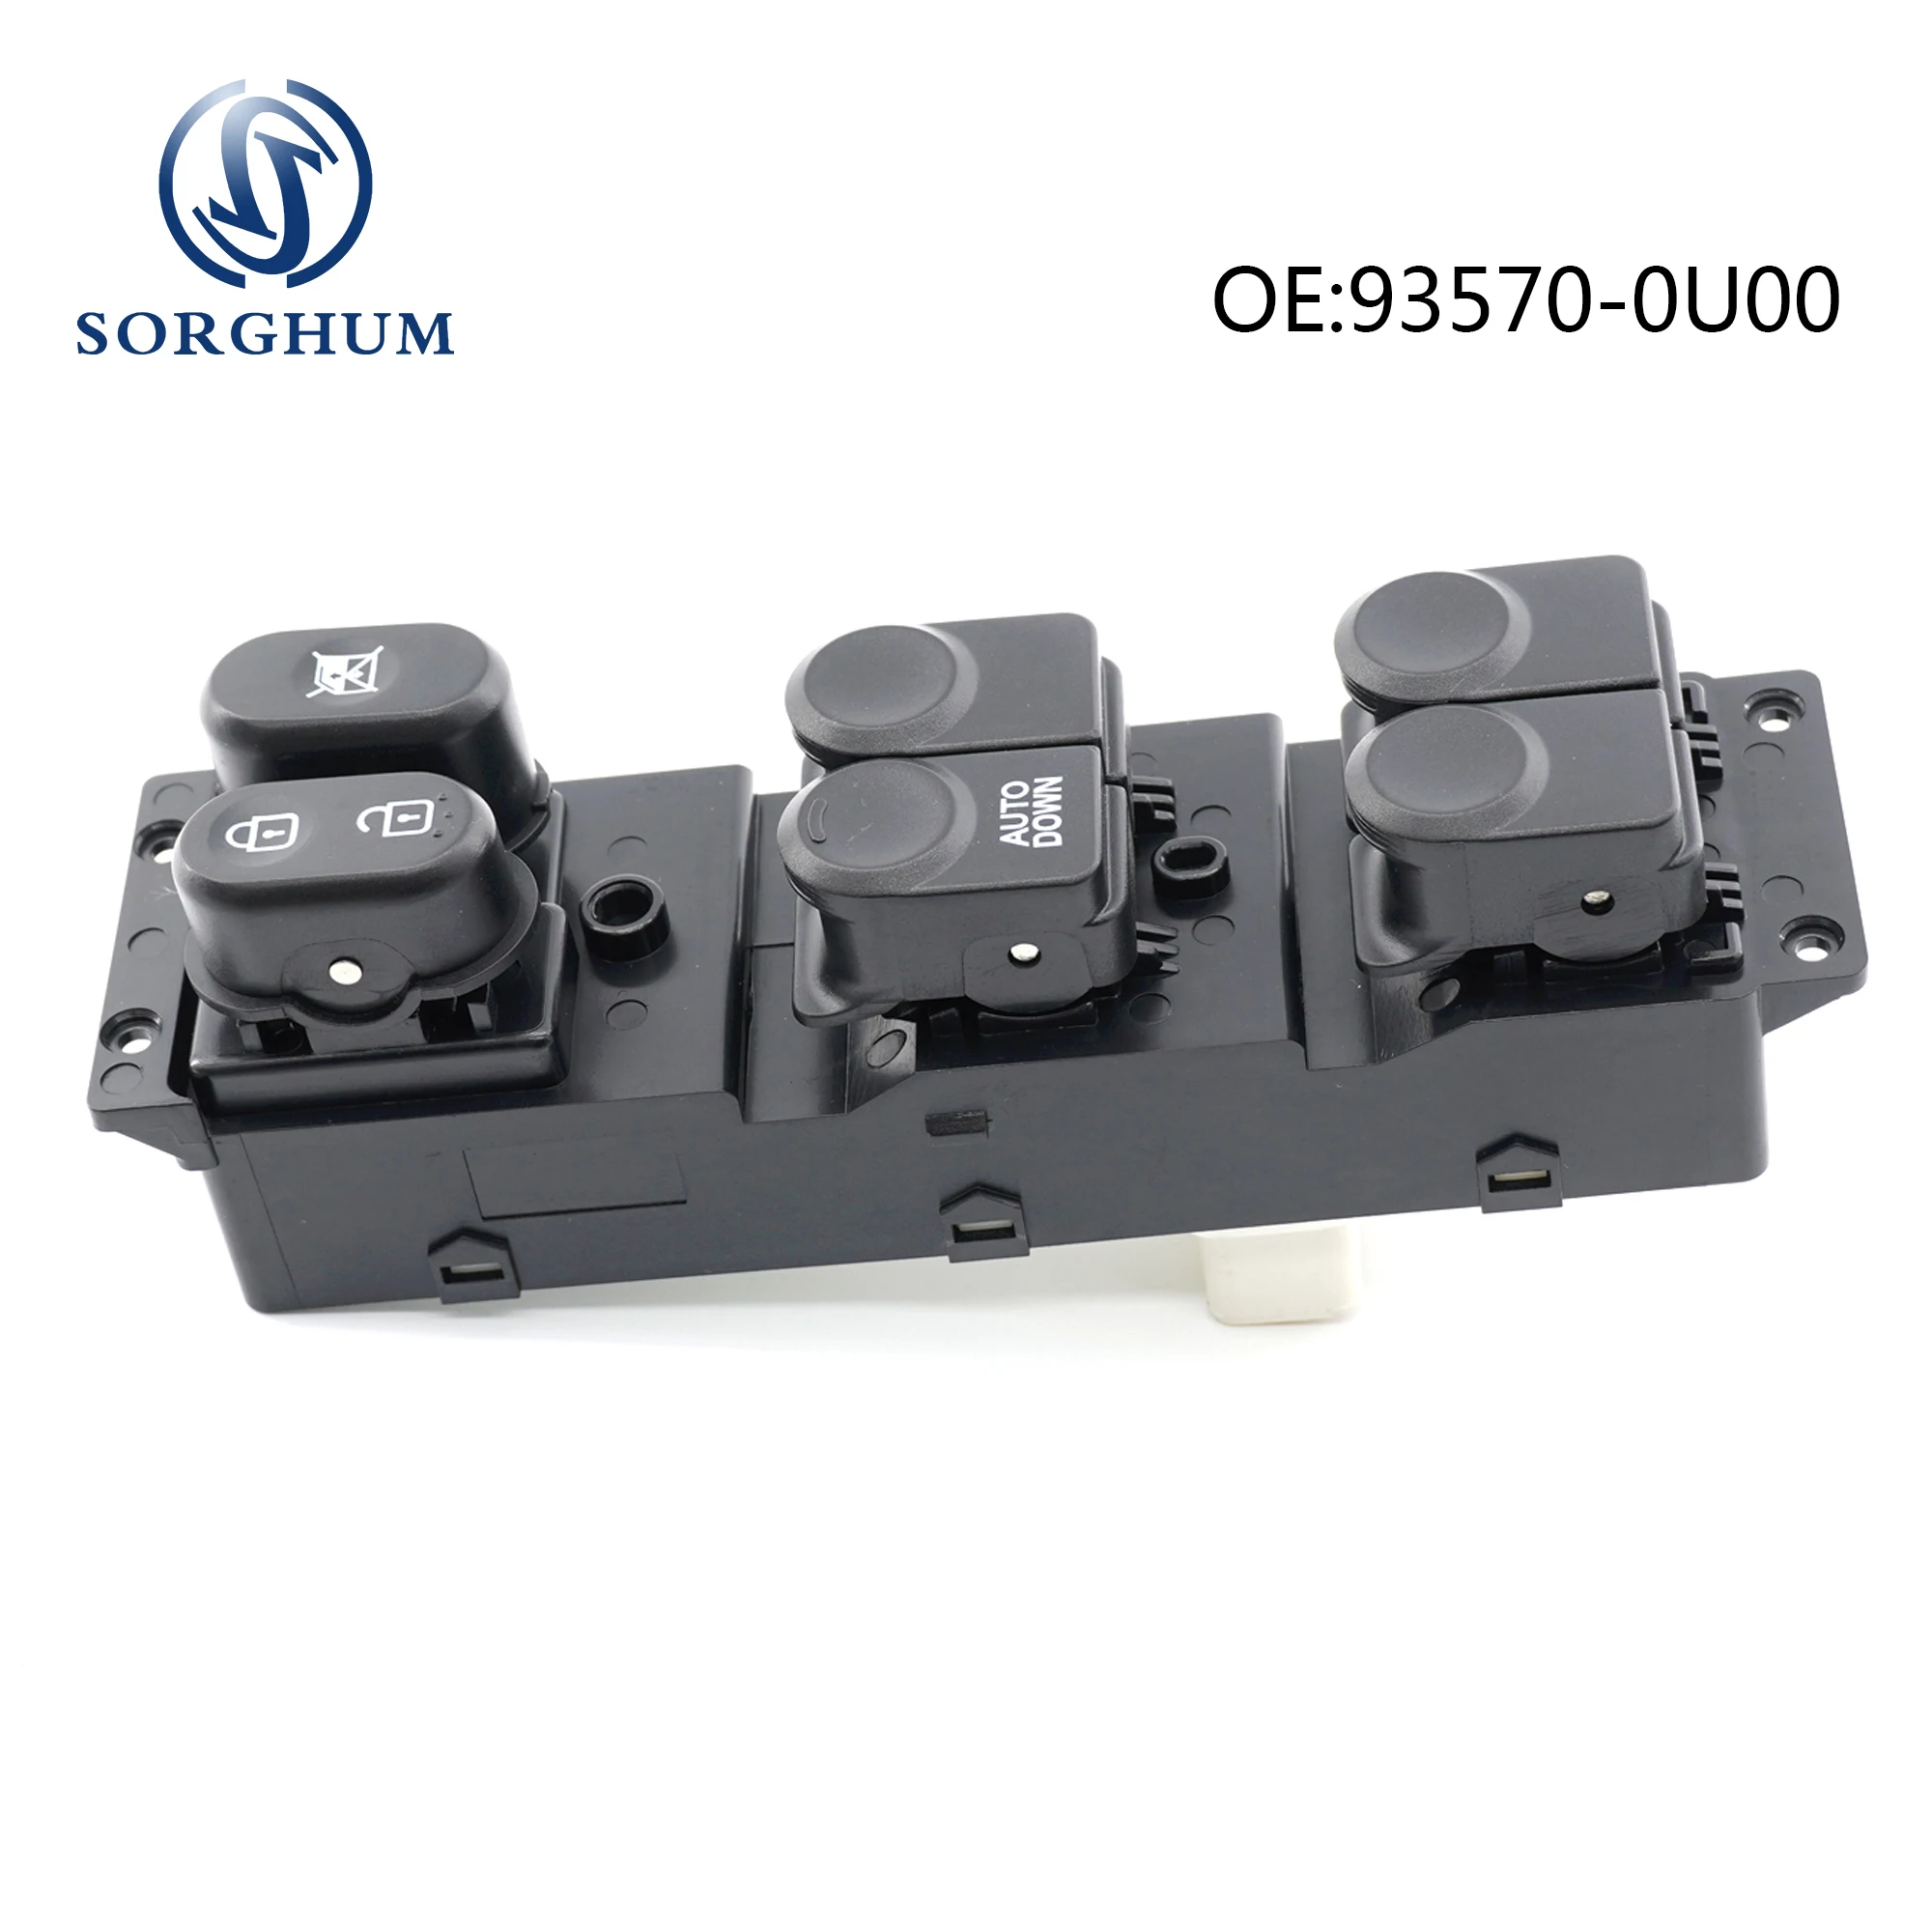 

SORGHUM LHD Side Master Power Window Switch For Hyundai Accent 2010 2011 2012 2013 2014 93570-0U000 93570-0U110 93670-1R410